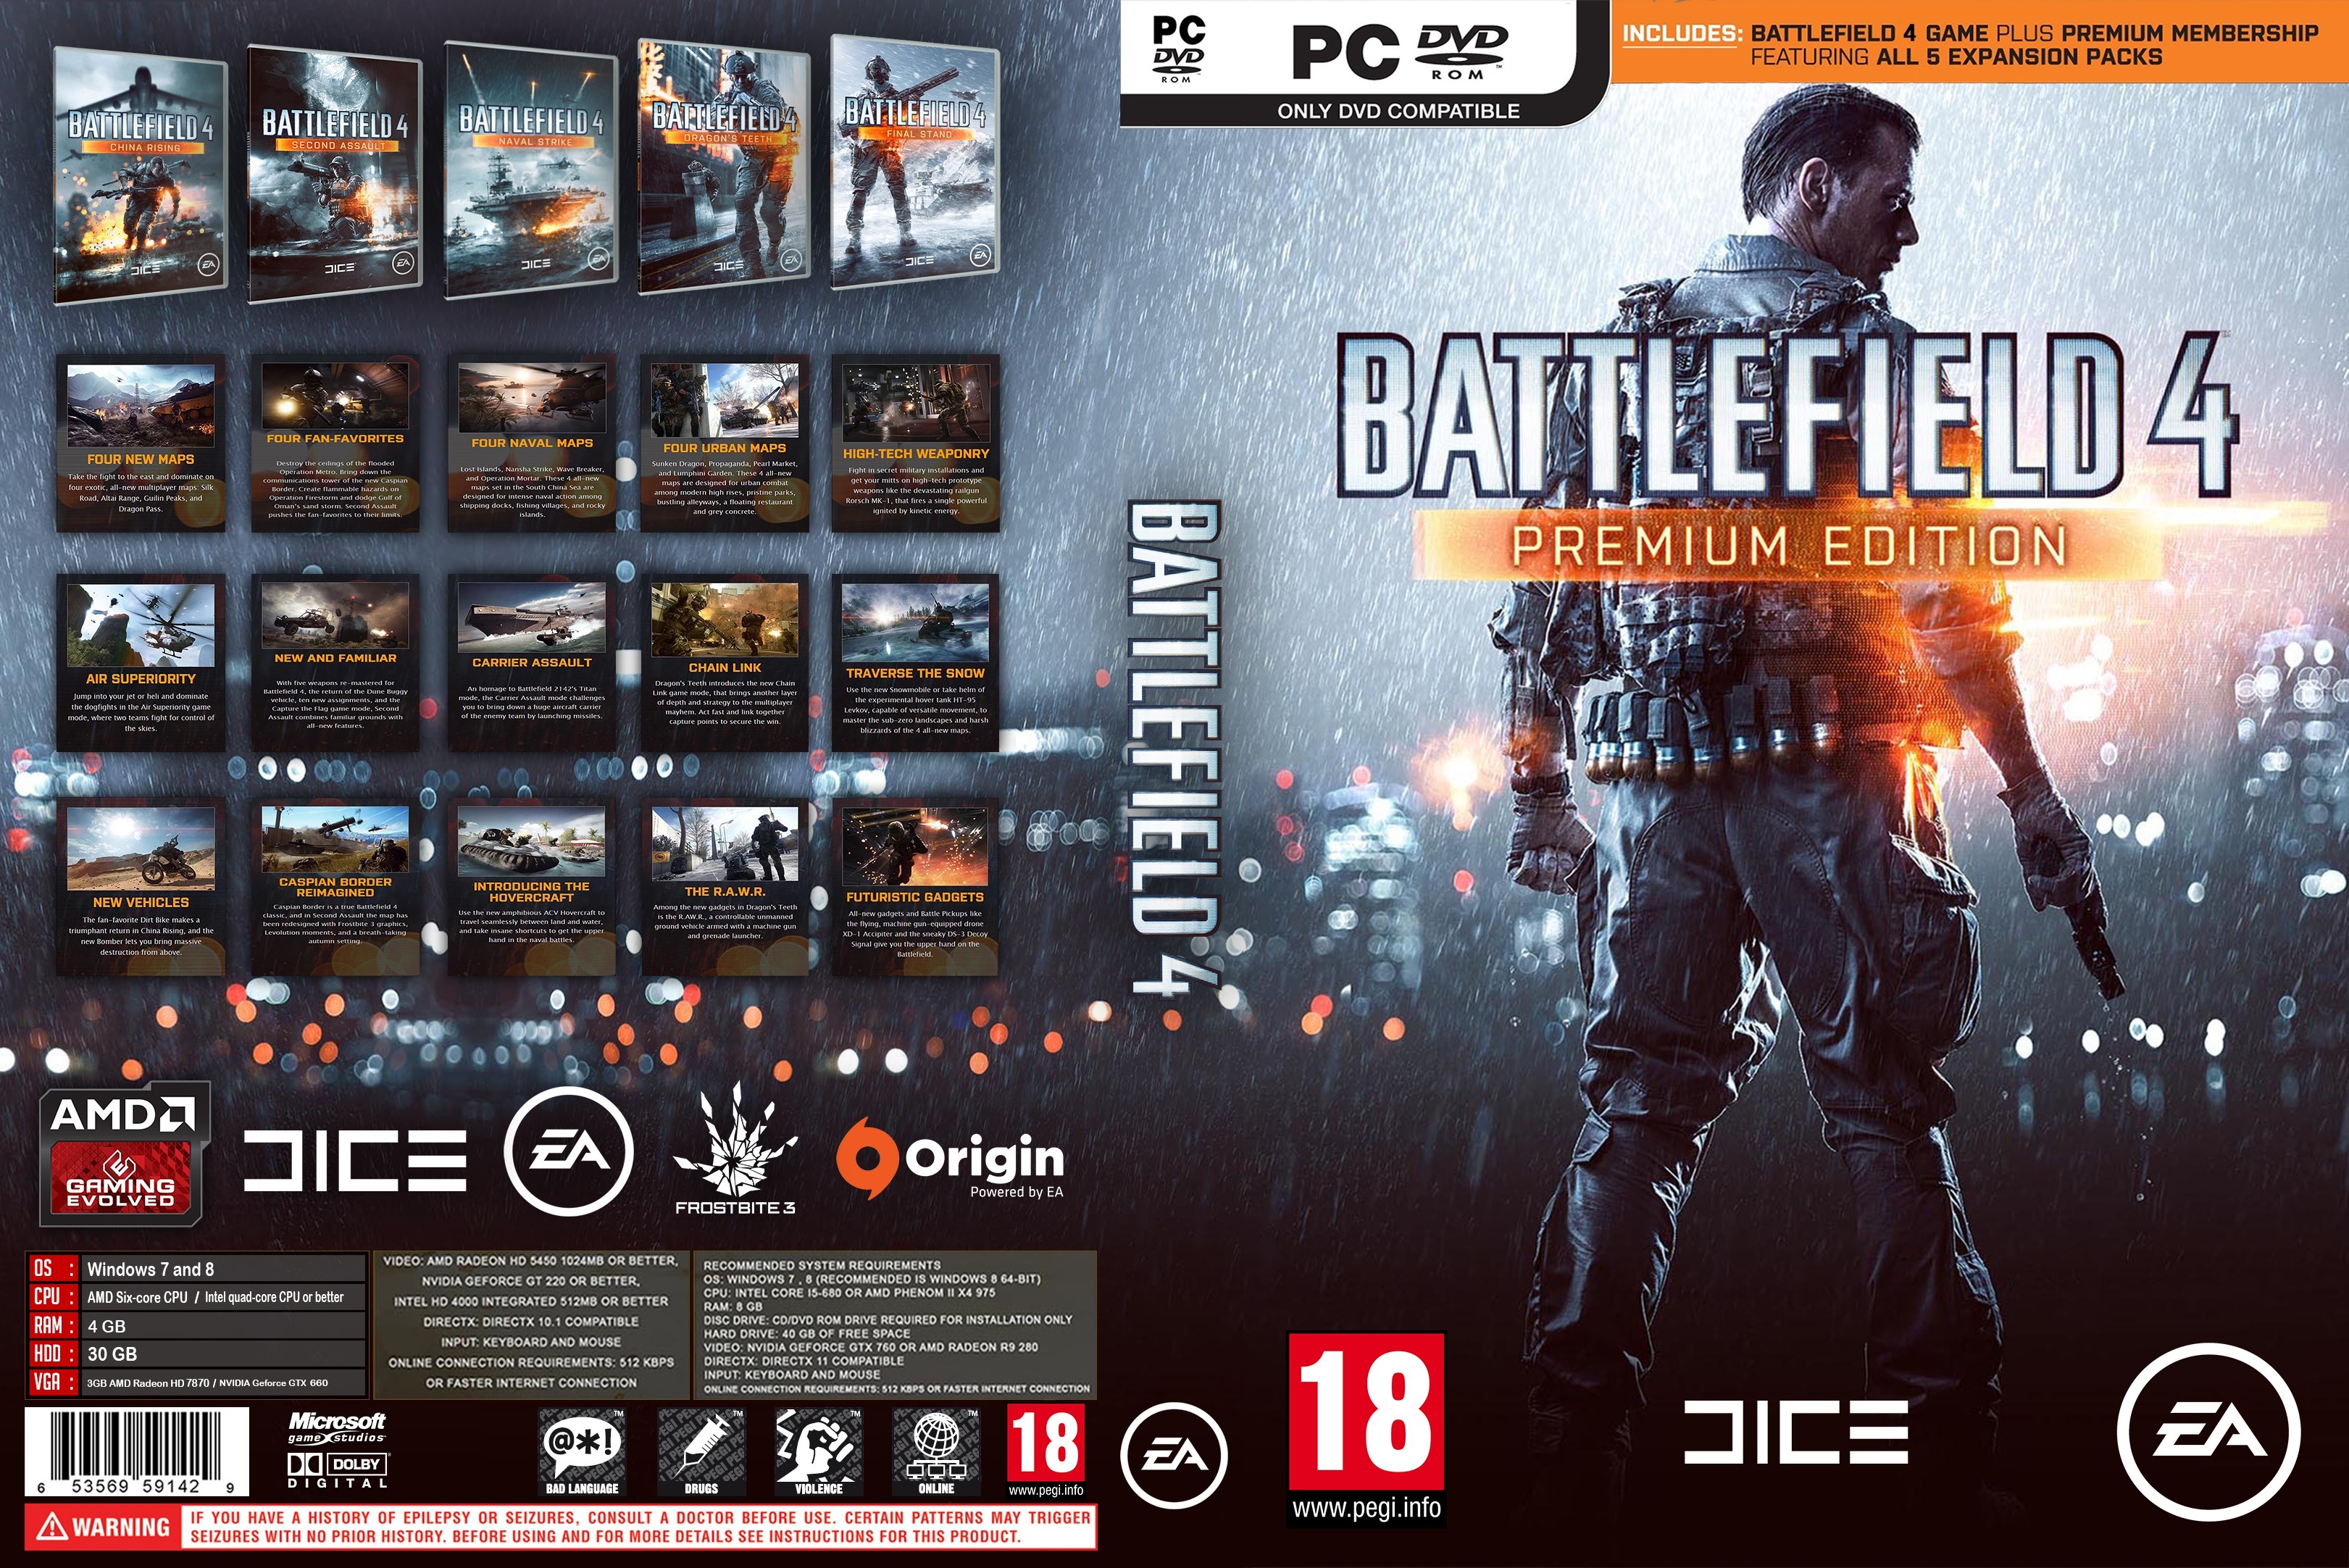 Battlefield 4 Premium Edition box cover